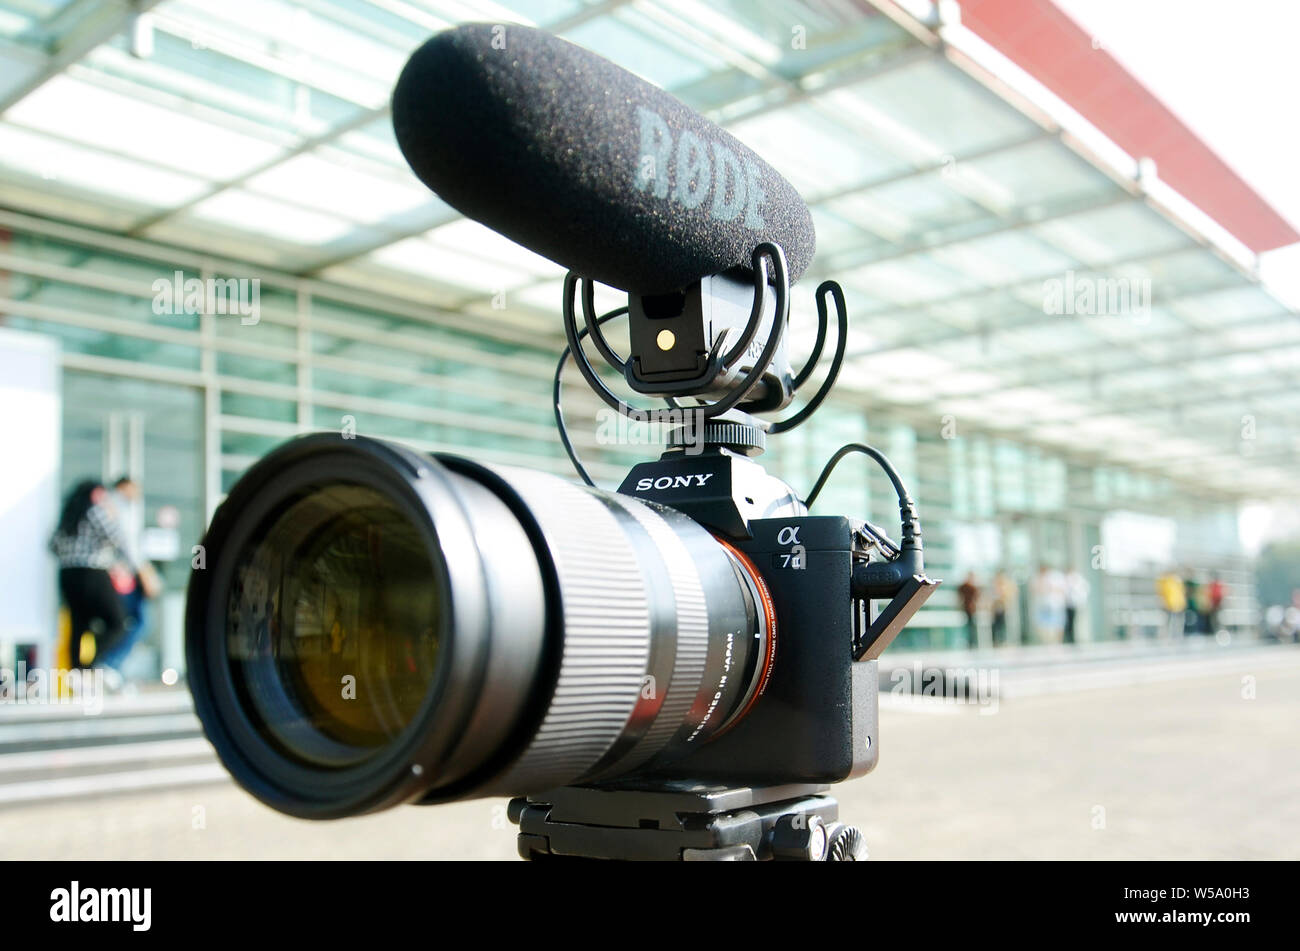 Riprese video utilizzando la fotocamera Sony Mirorless a7II,gamma media Tamron obiettivo 28-75mm, con microfono esterno Rode per la registrazione del suono Foto Stock